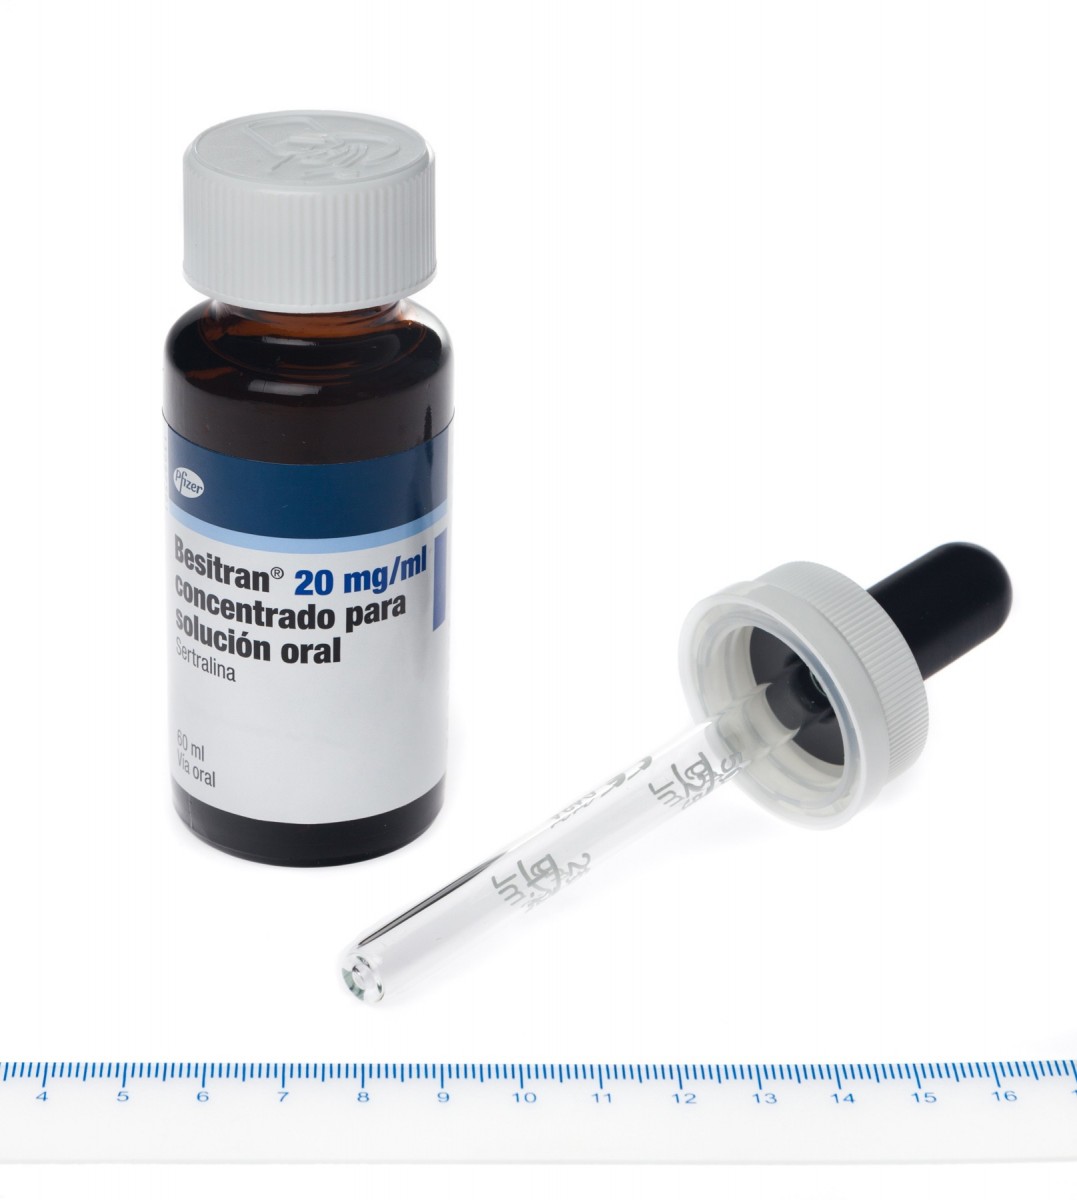 BESITRAN 20 mg/ml CONCENTRADO PARA SOLUCION ORAL , 1 frasco de 60 ml fotografía de la forma farmacéutica.